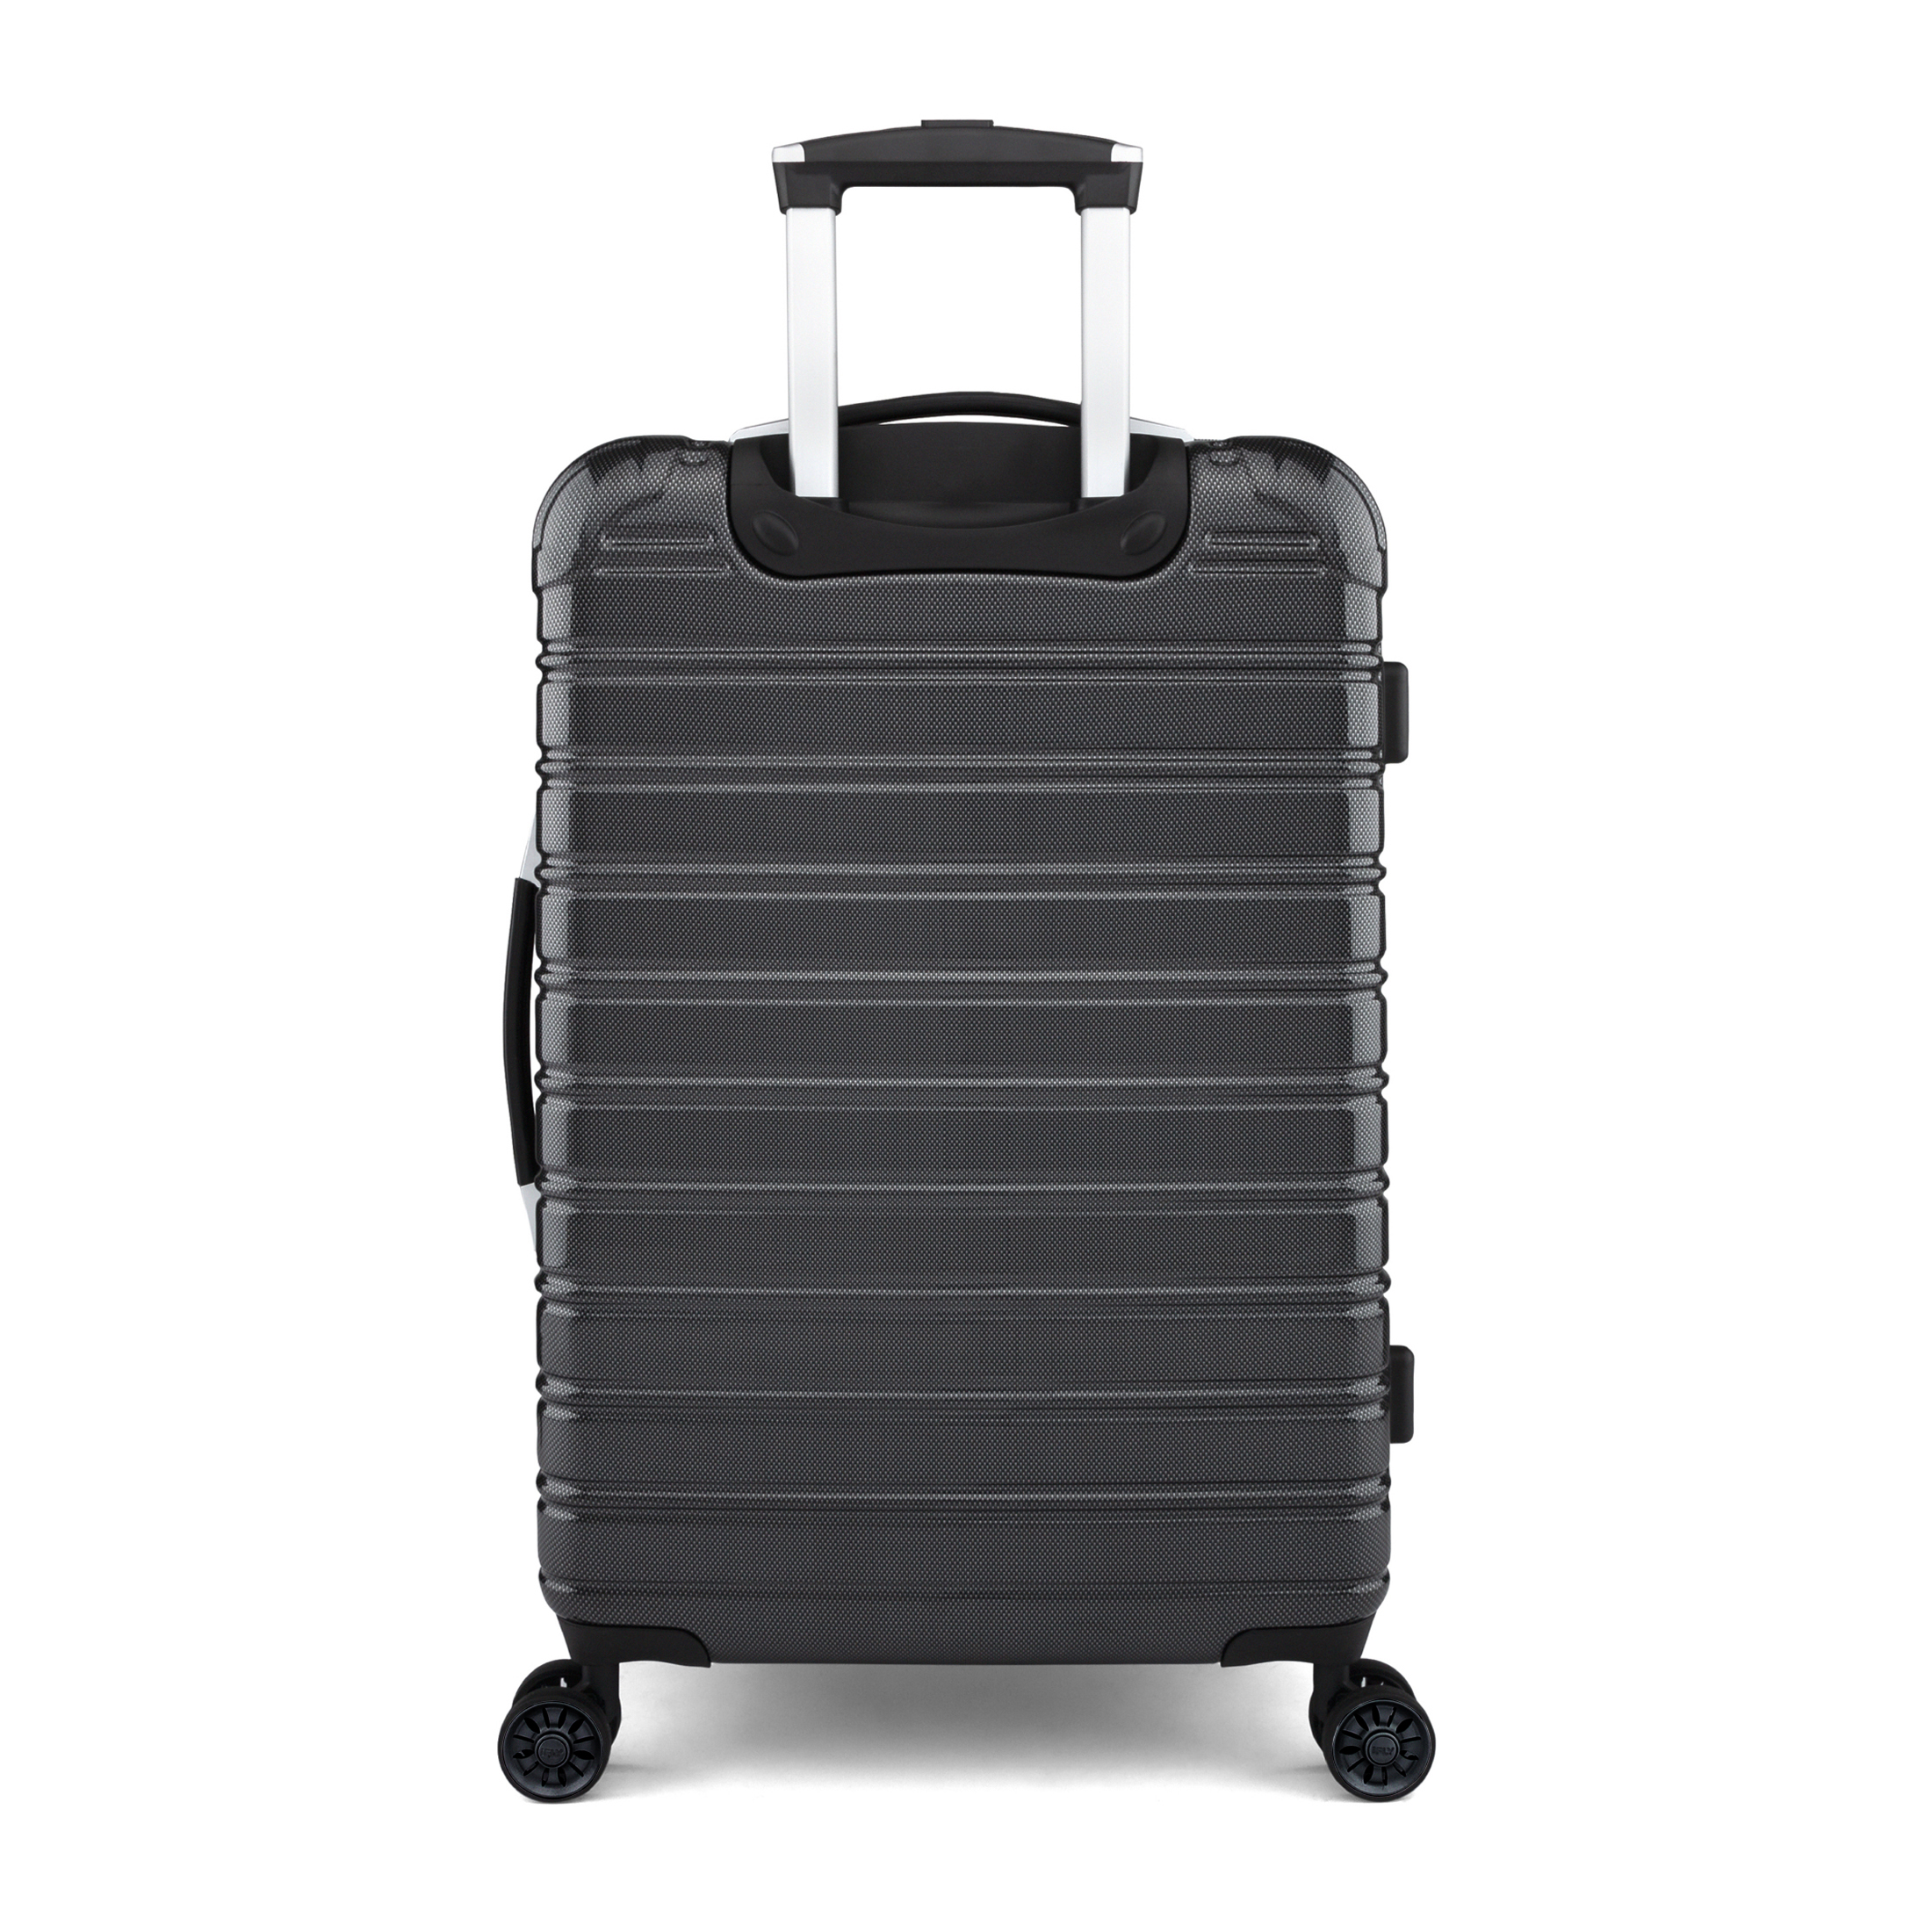 iFLY Hardside Fibertech Luggage 20" Carry-on Luggage, Black - image 4 of 10